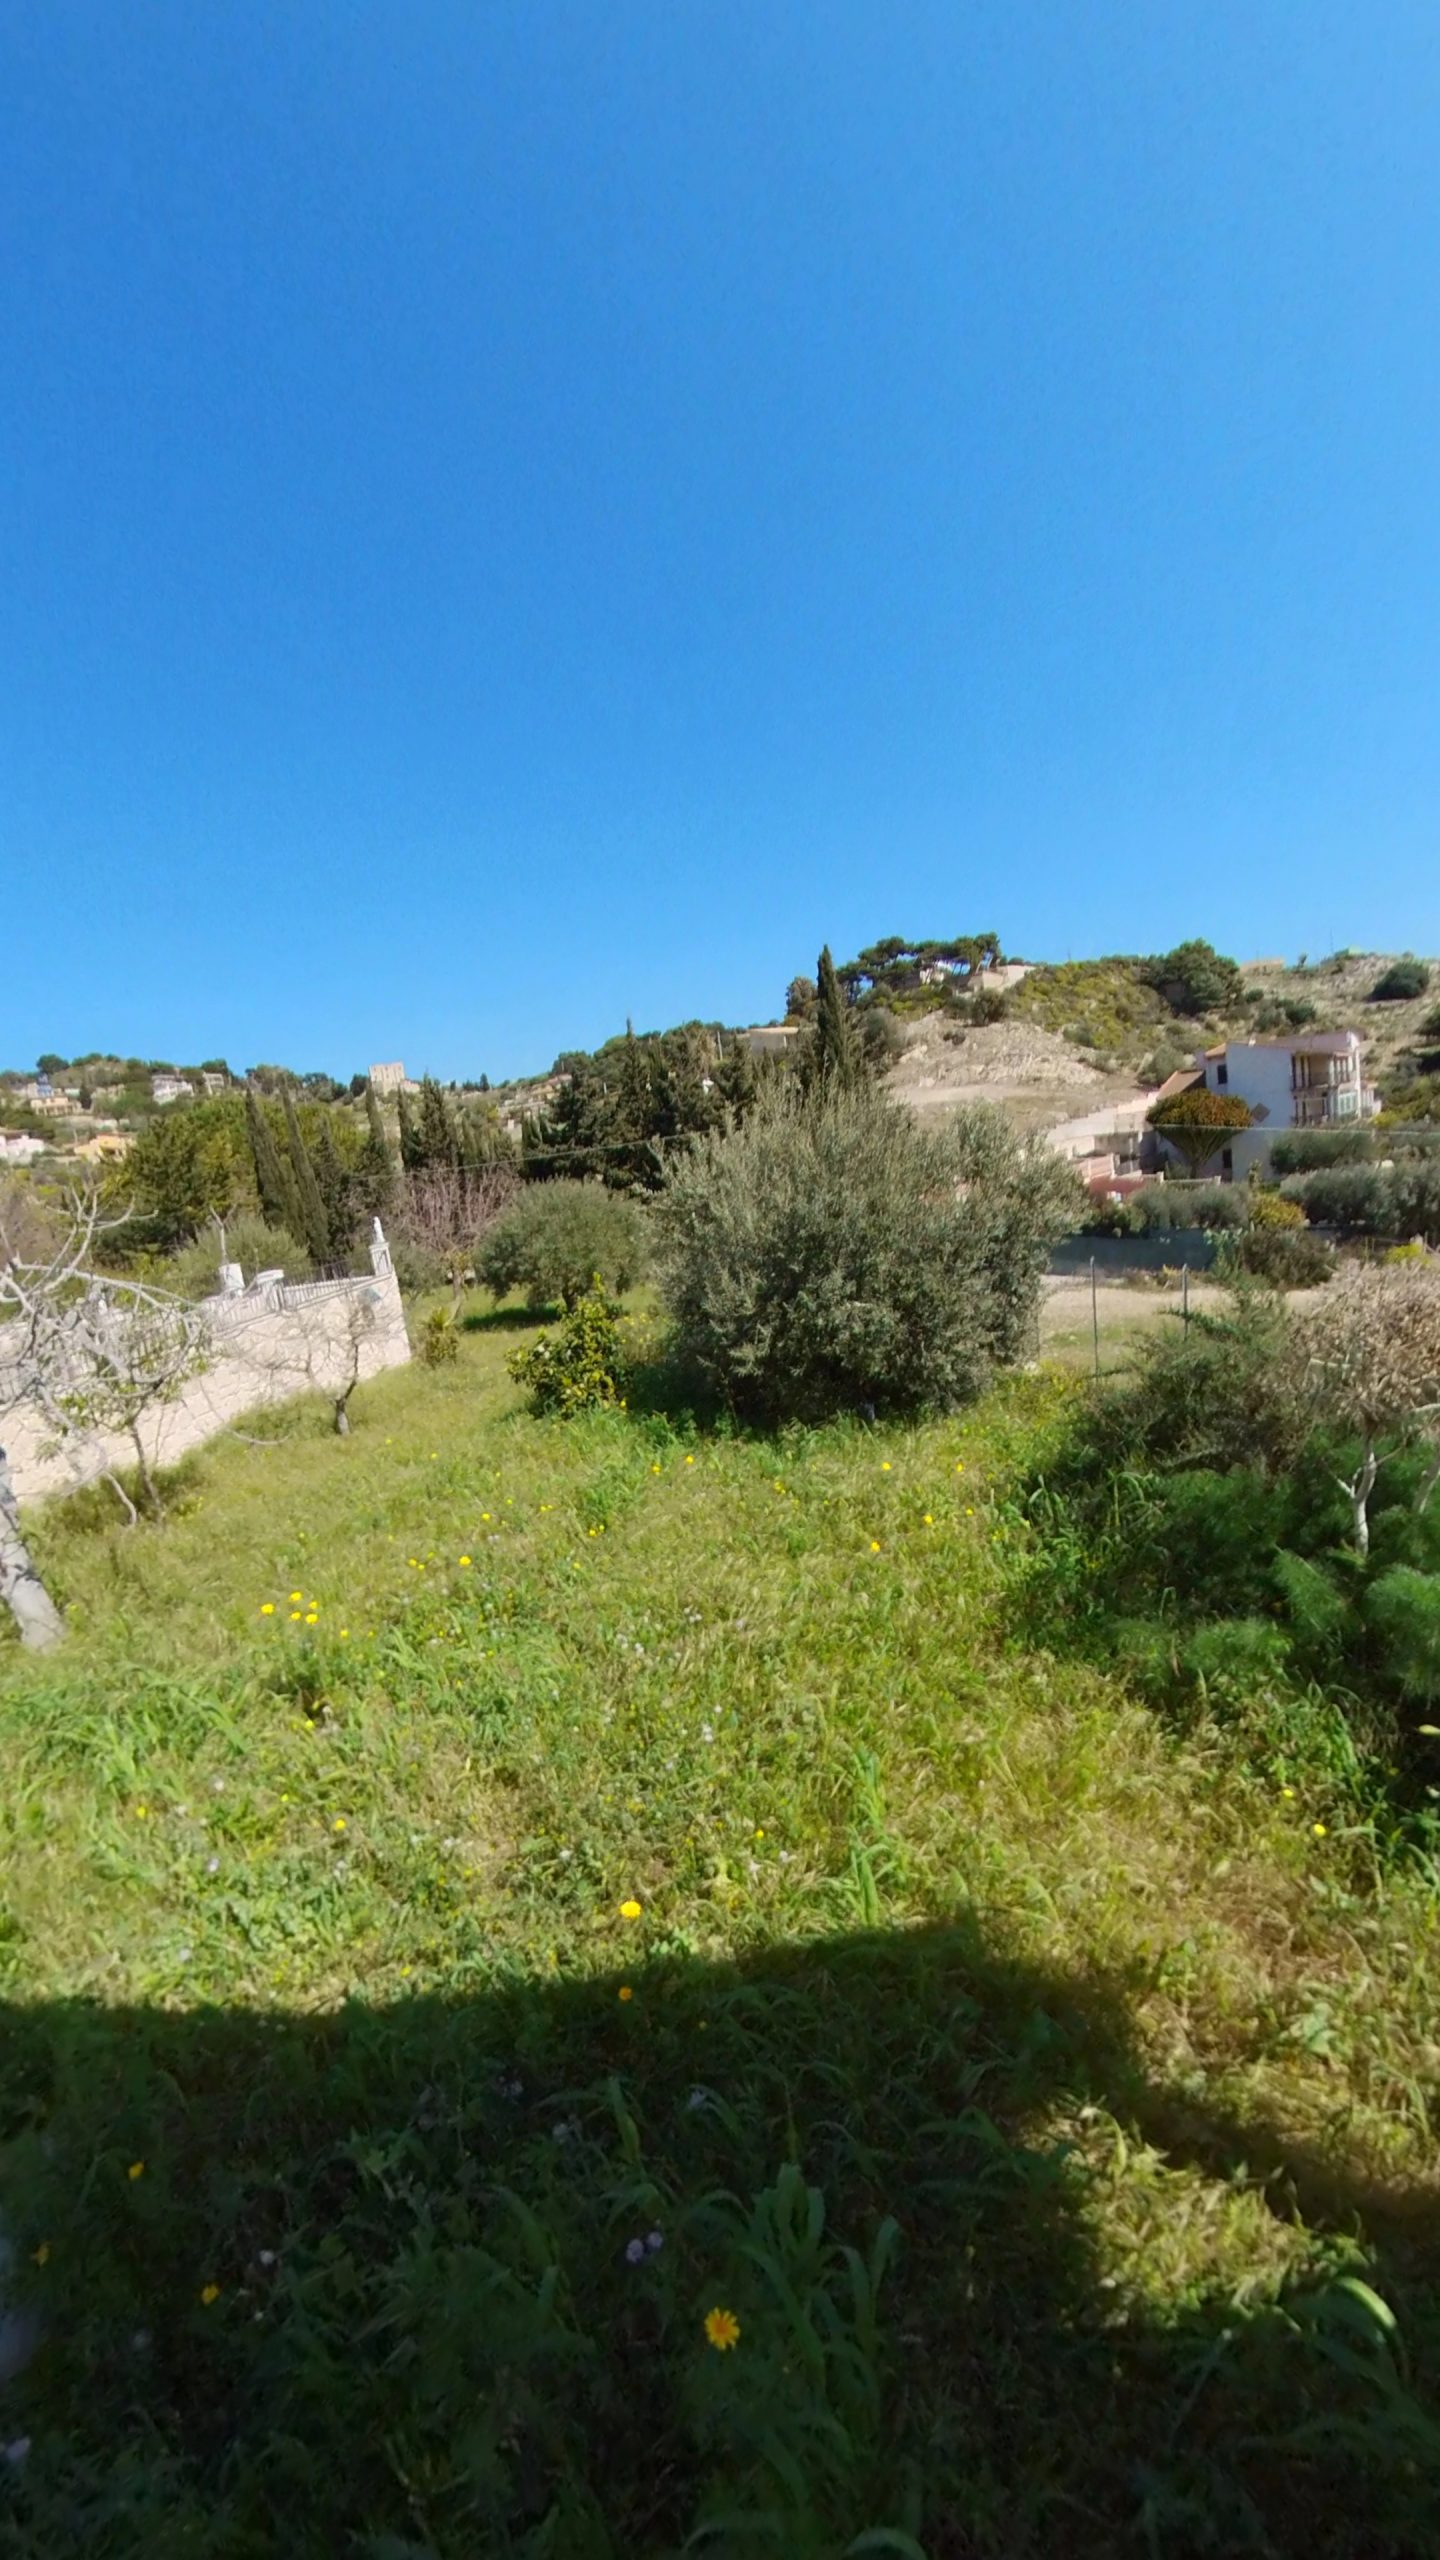 Villetta in vendita zona Nicolizia, vicino al mare – Licata